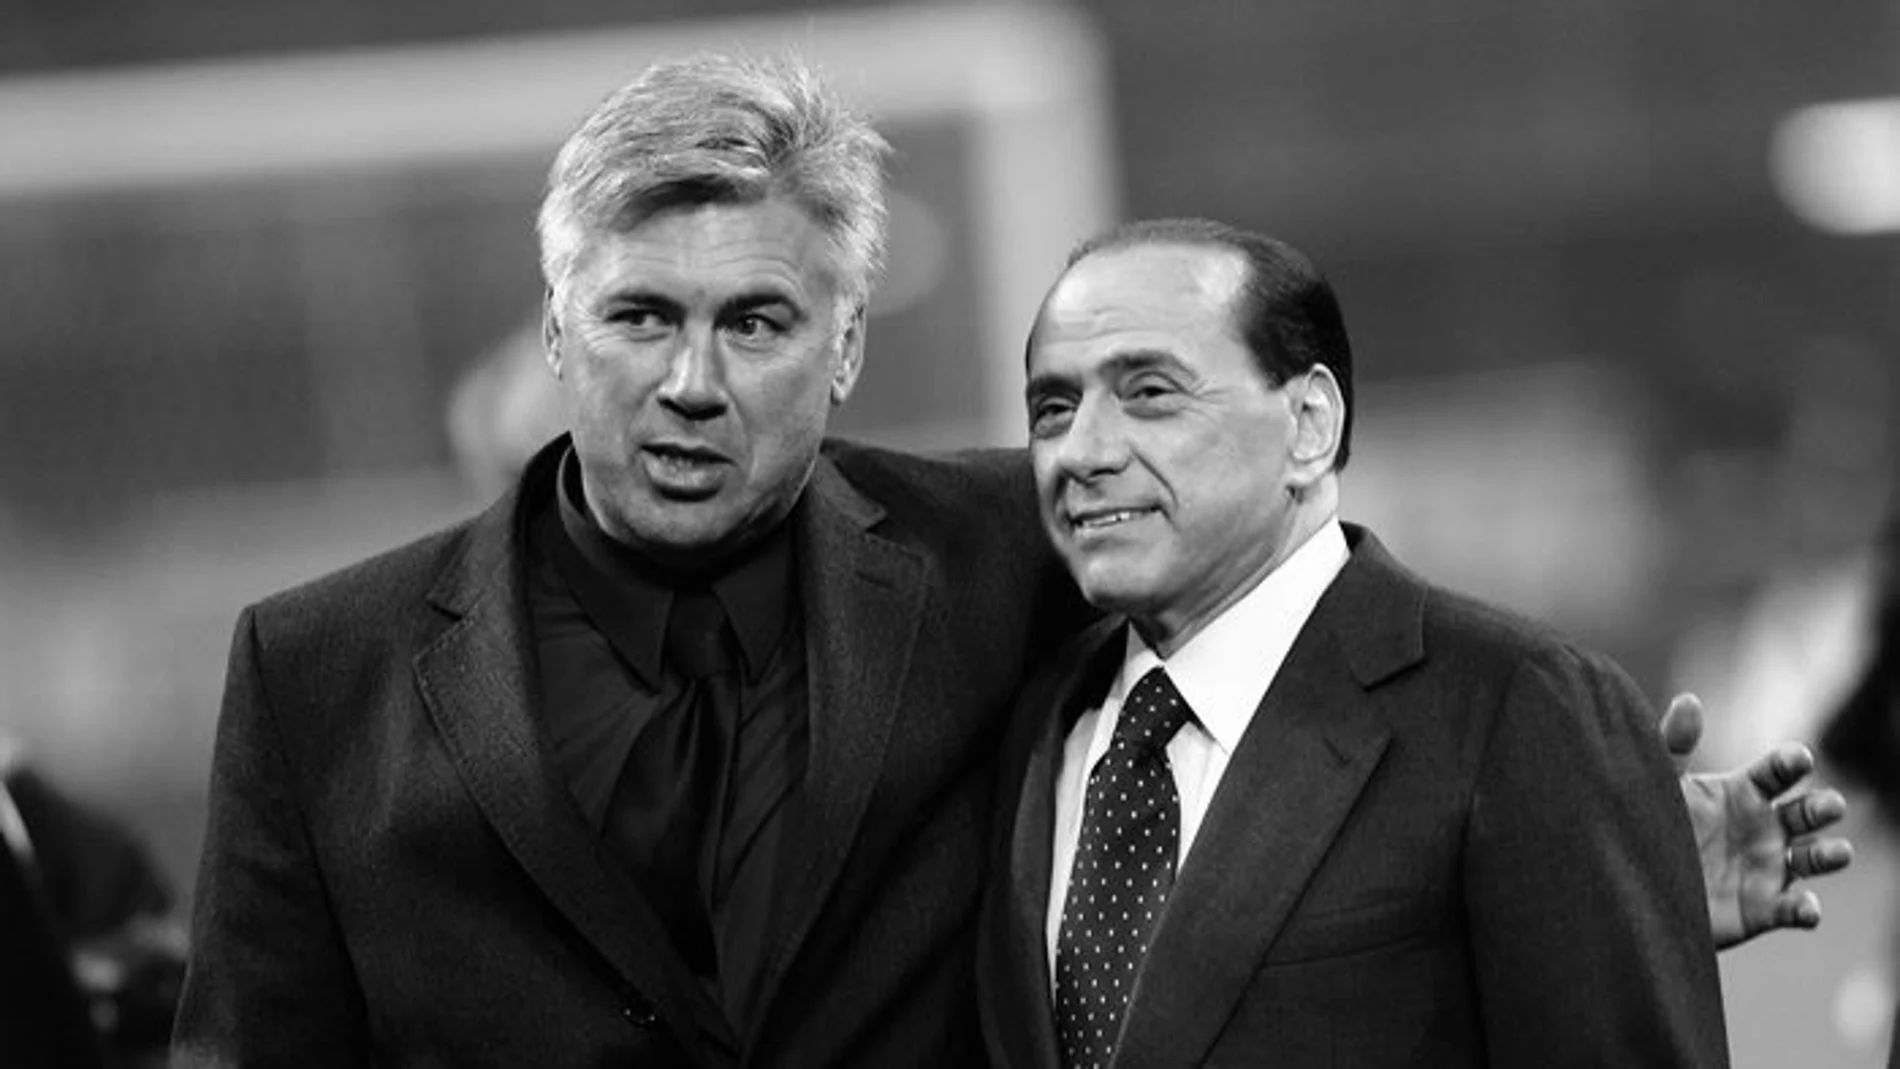 La emotiva despedida de Ancelotti tras la muerte de Silvio Berlusconi